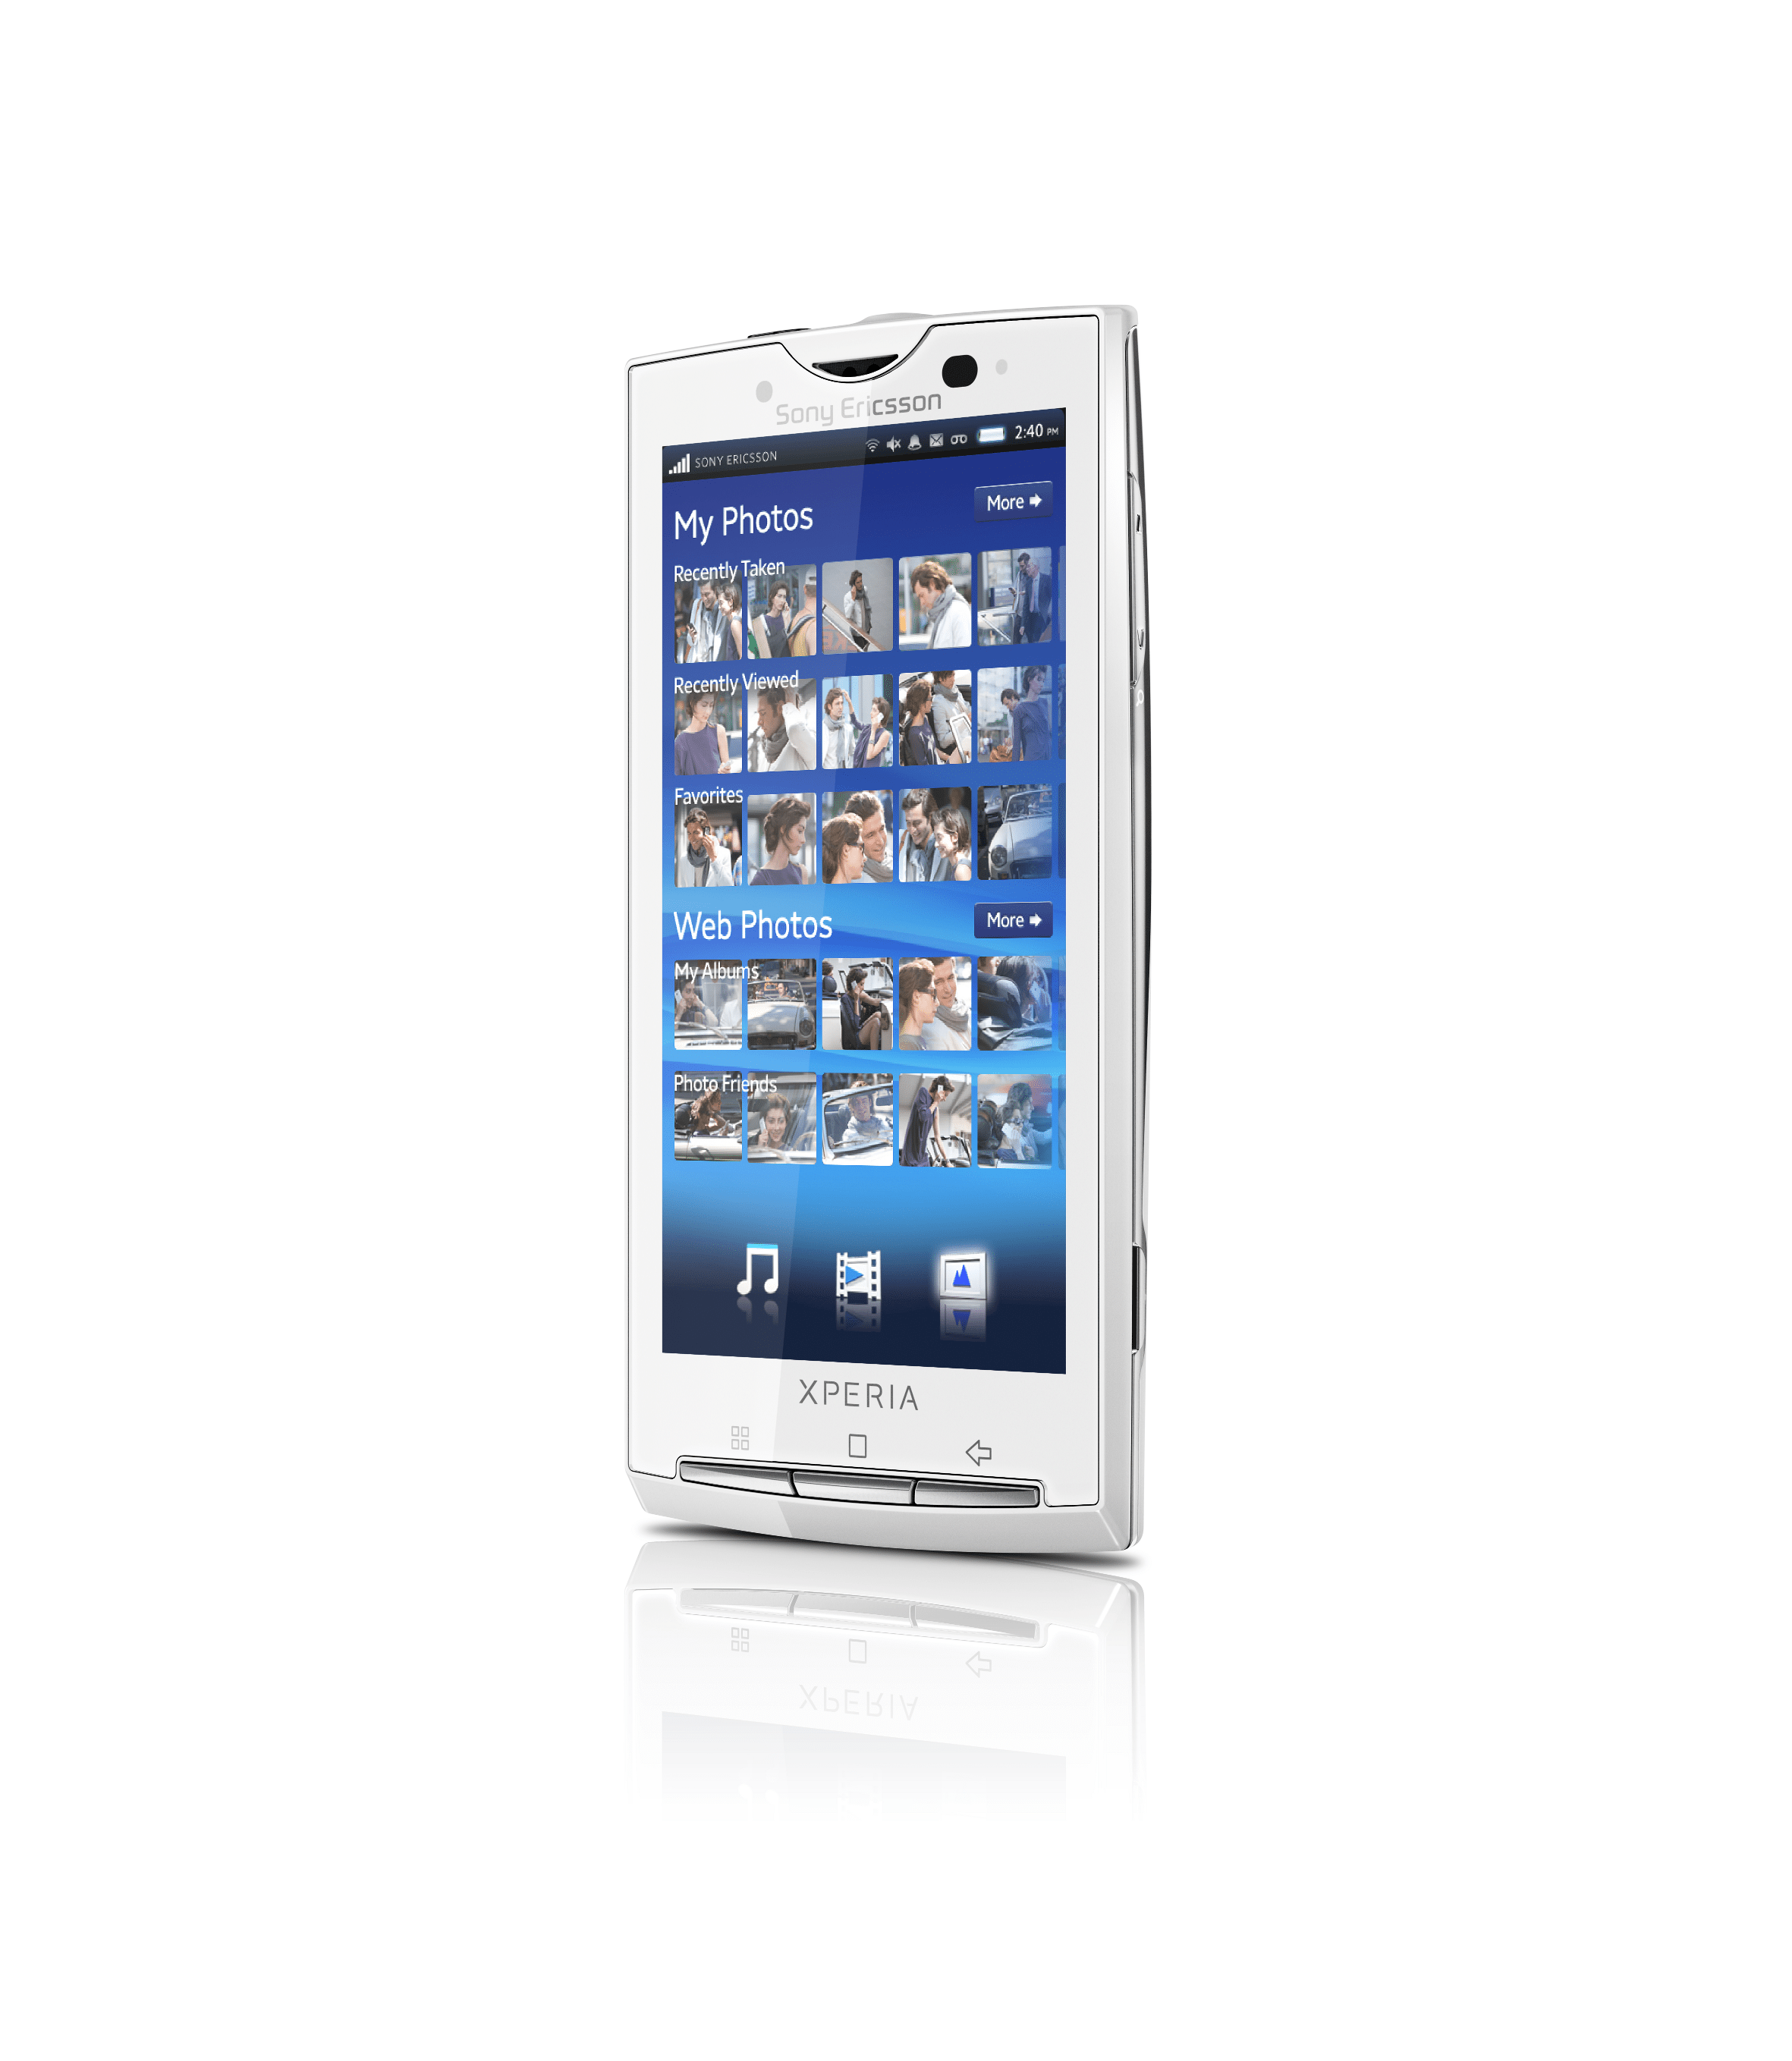 Sony Ericsson annonce officiellement le X10